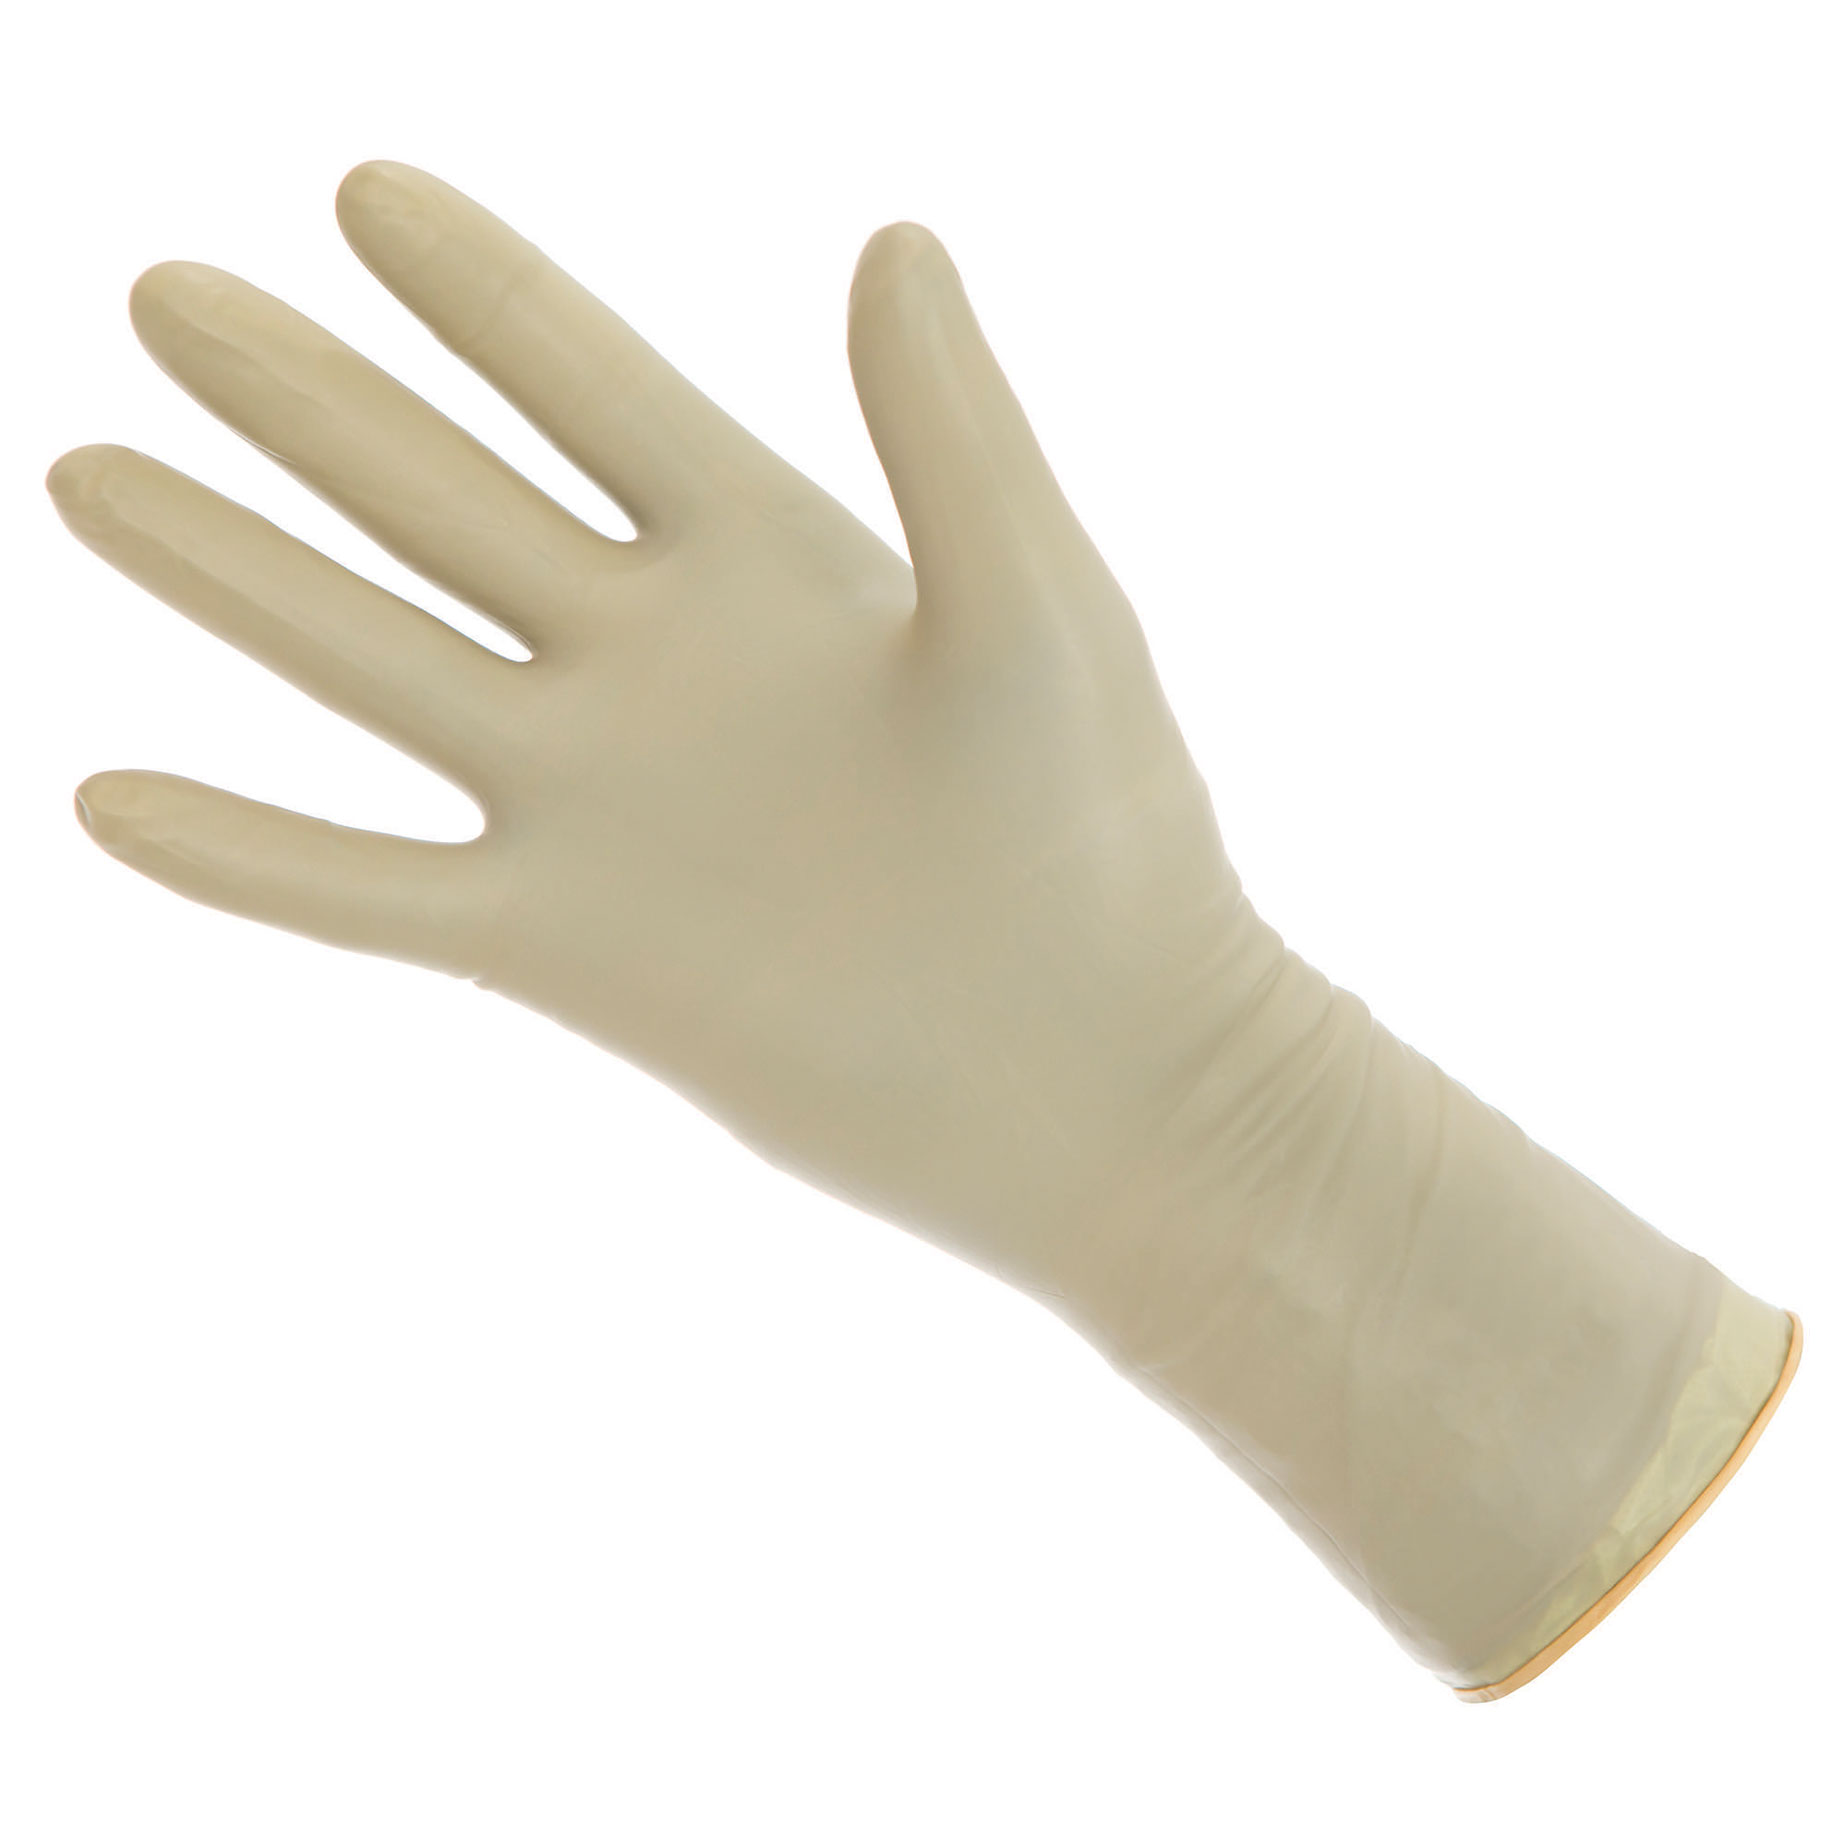 Biogel Skinsense Sterile Gloves Size 8.0 